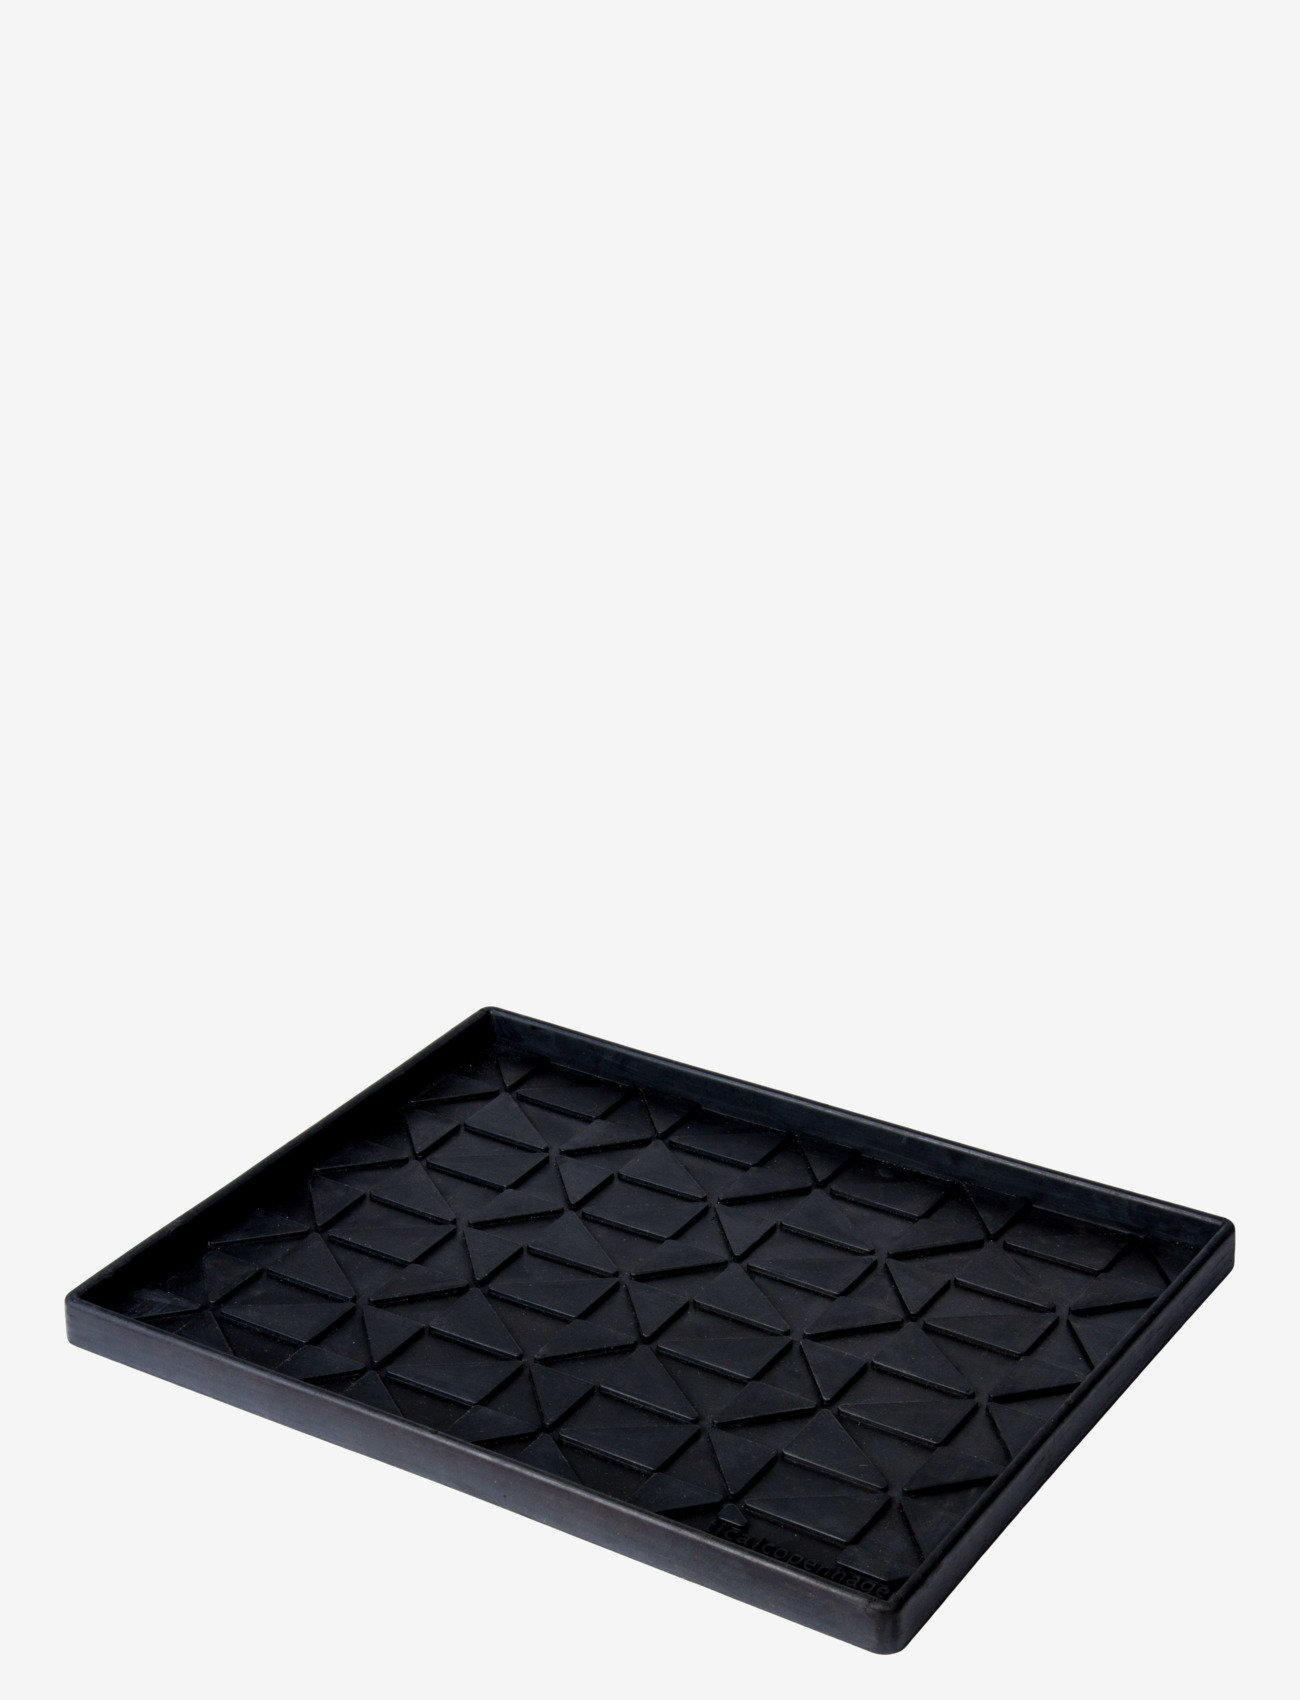 tica copenhagen - Shoe and boot tray rubber, M:48x38x3 cm - home - graphic design - 1